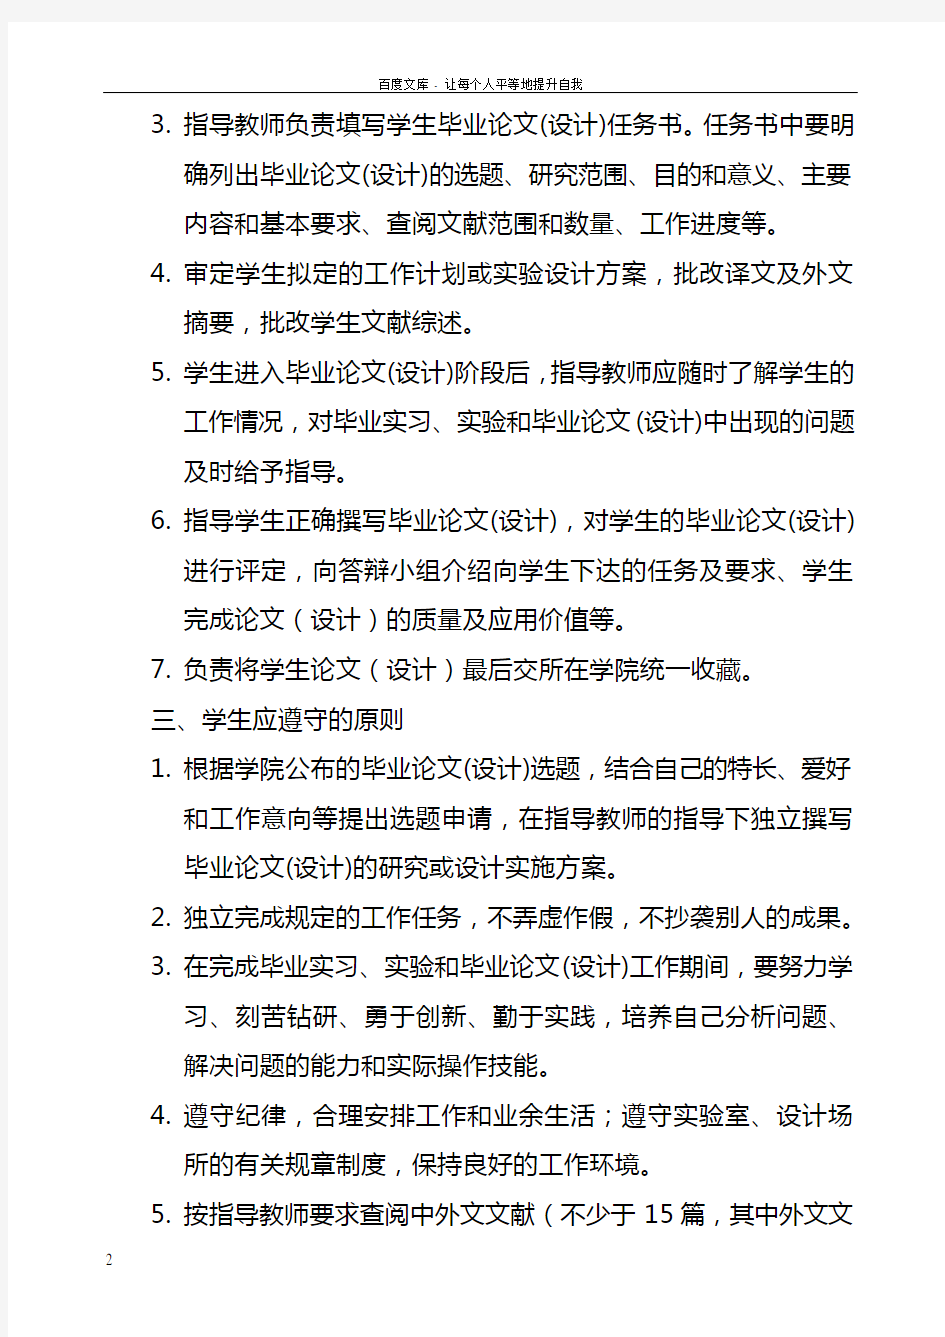 北京林业大学于本科毕业论文设计工作的规定修订